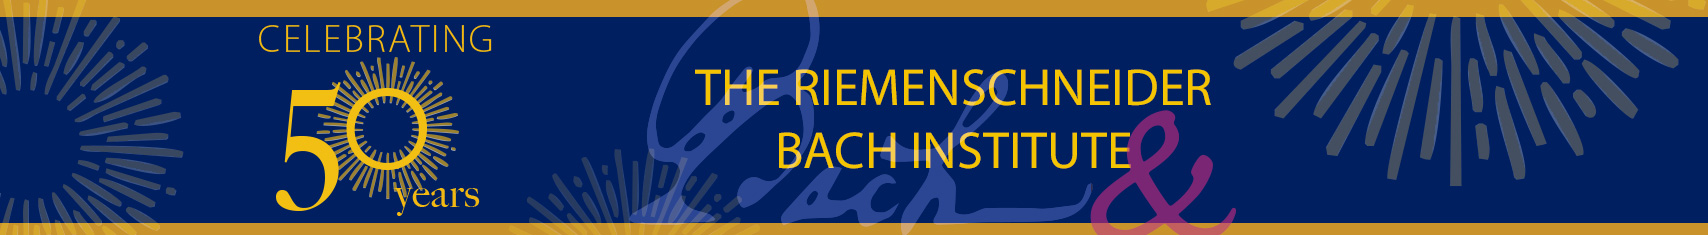 Riemenschneider Bach Institute 50 years banner